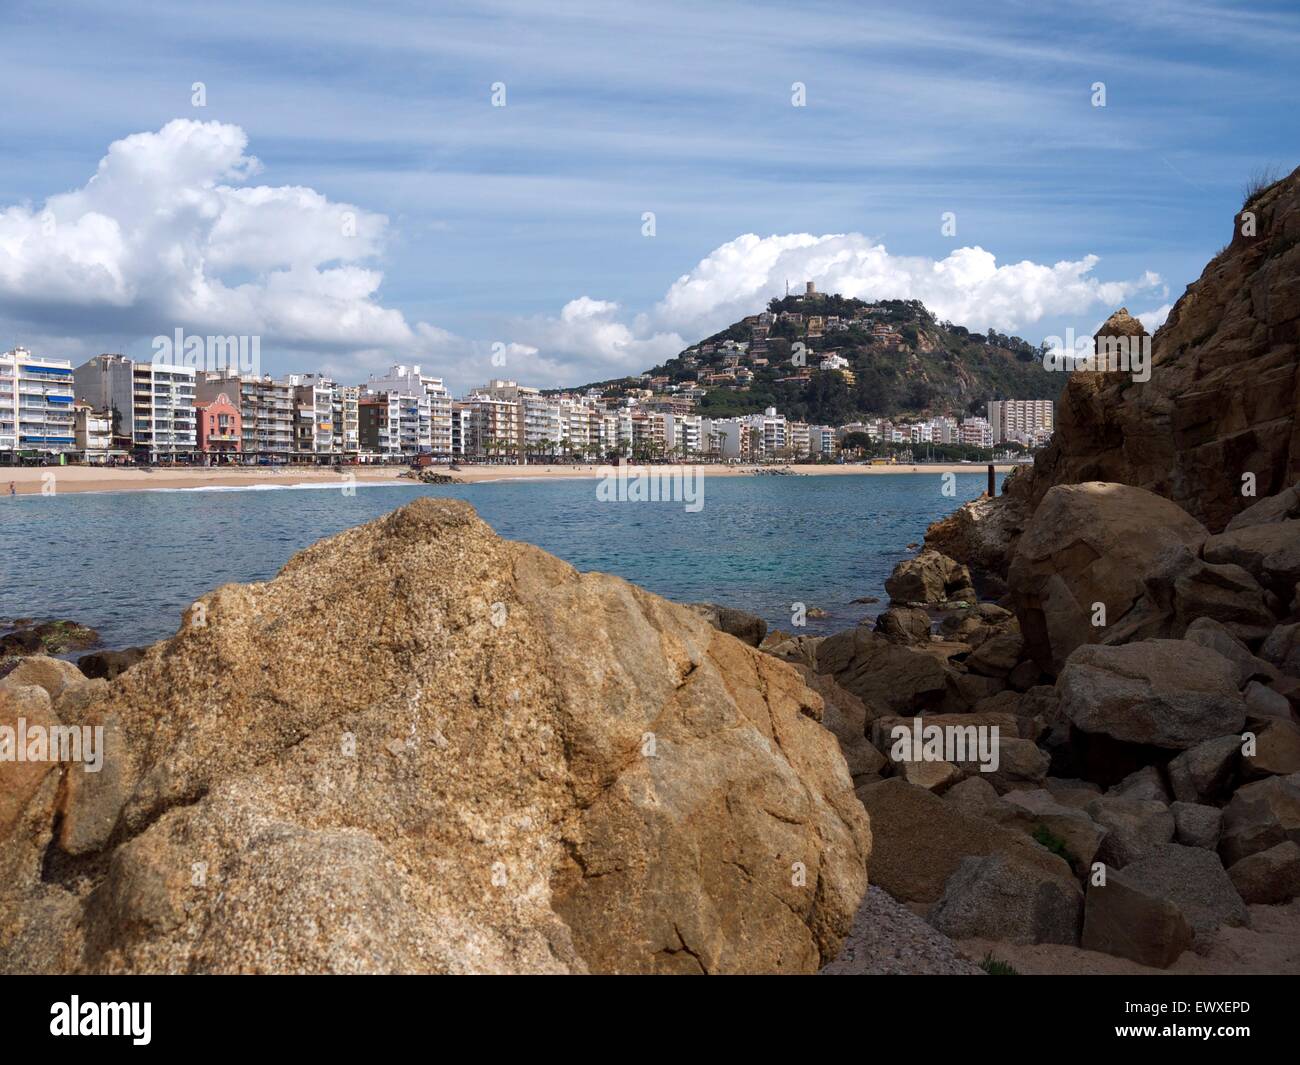 Le rocce in primo piano e un beach resort in background Foto Stock